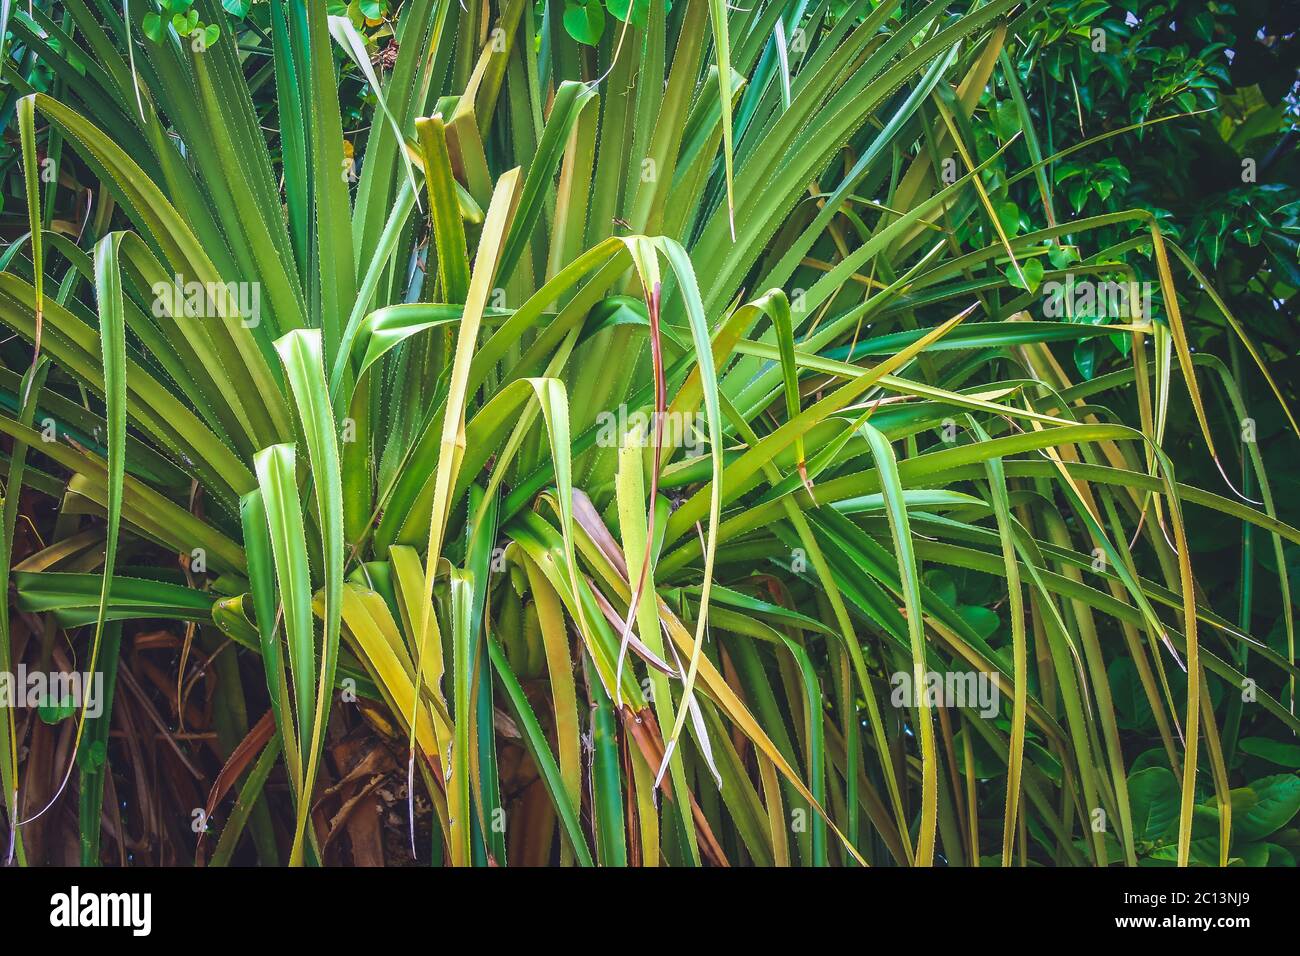 Dracaena marginata plant Stock Photo